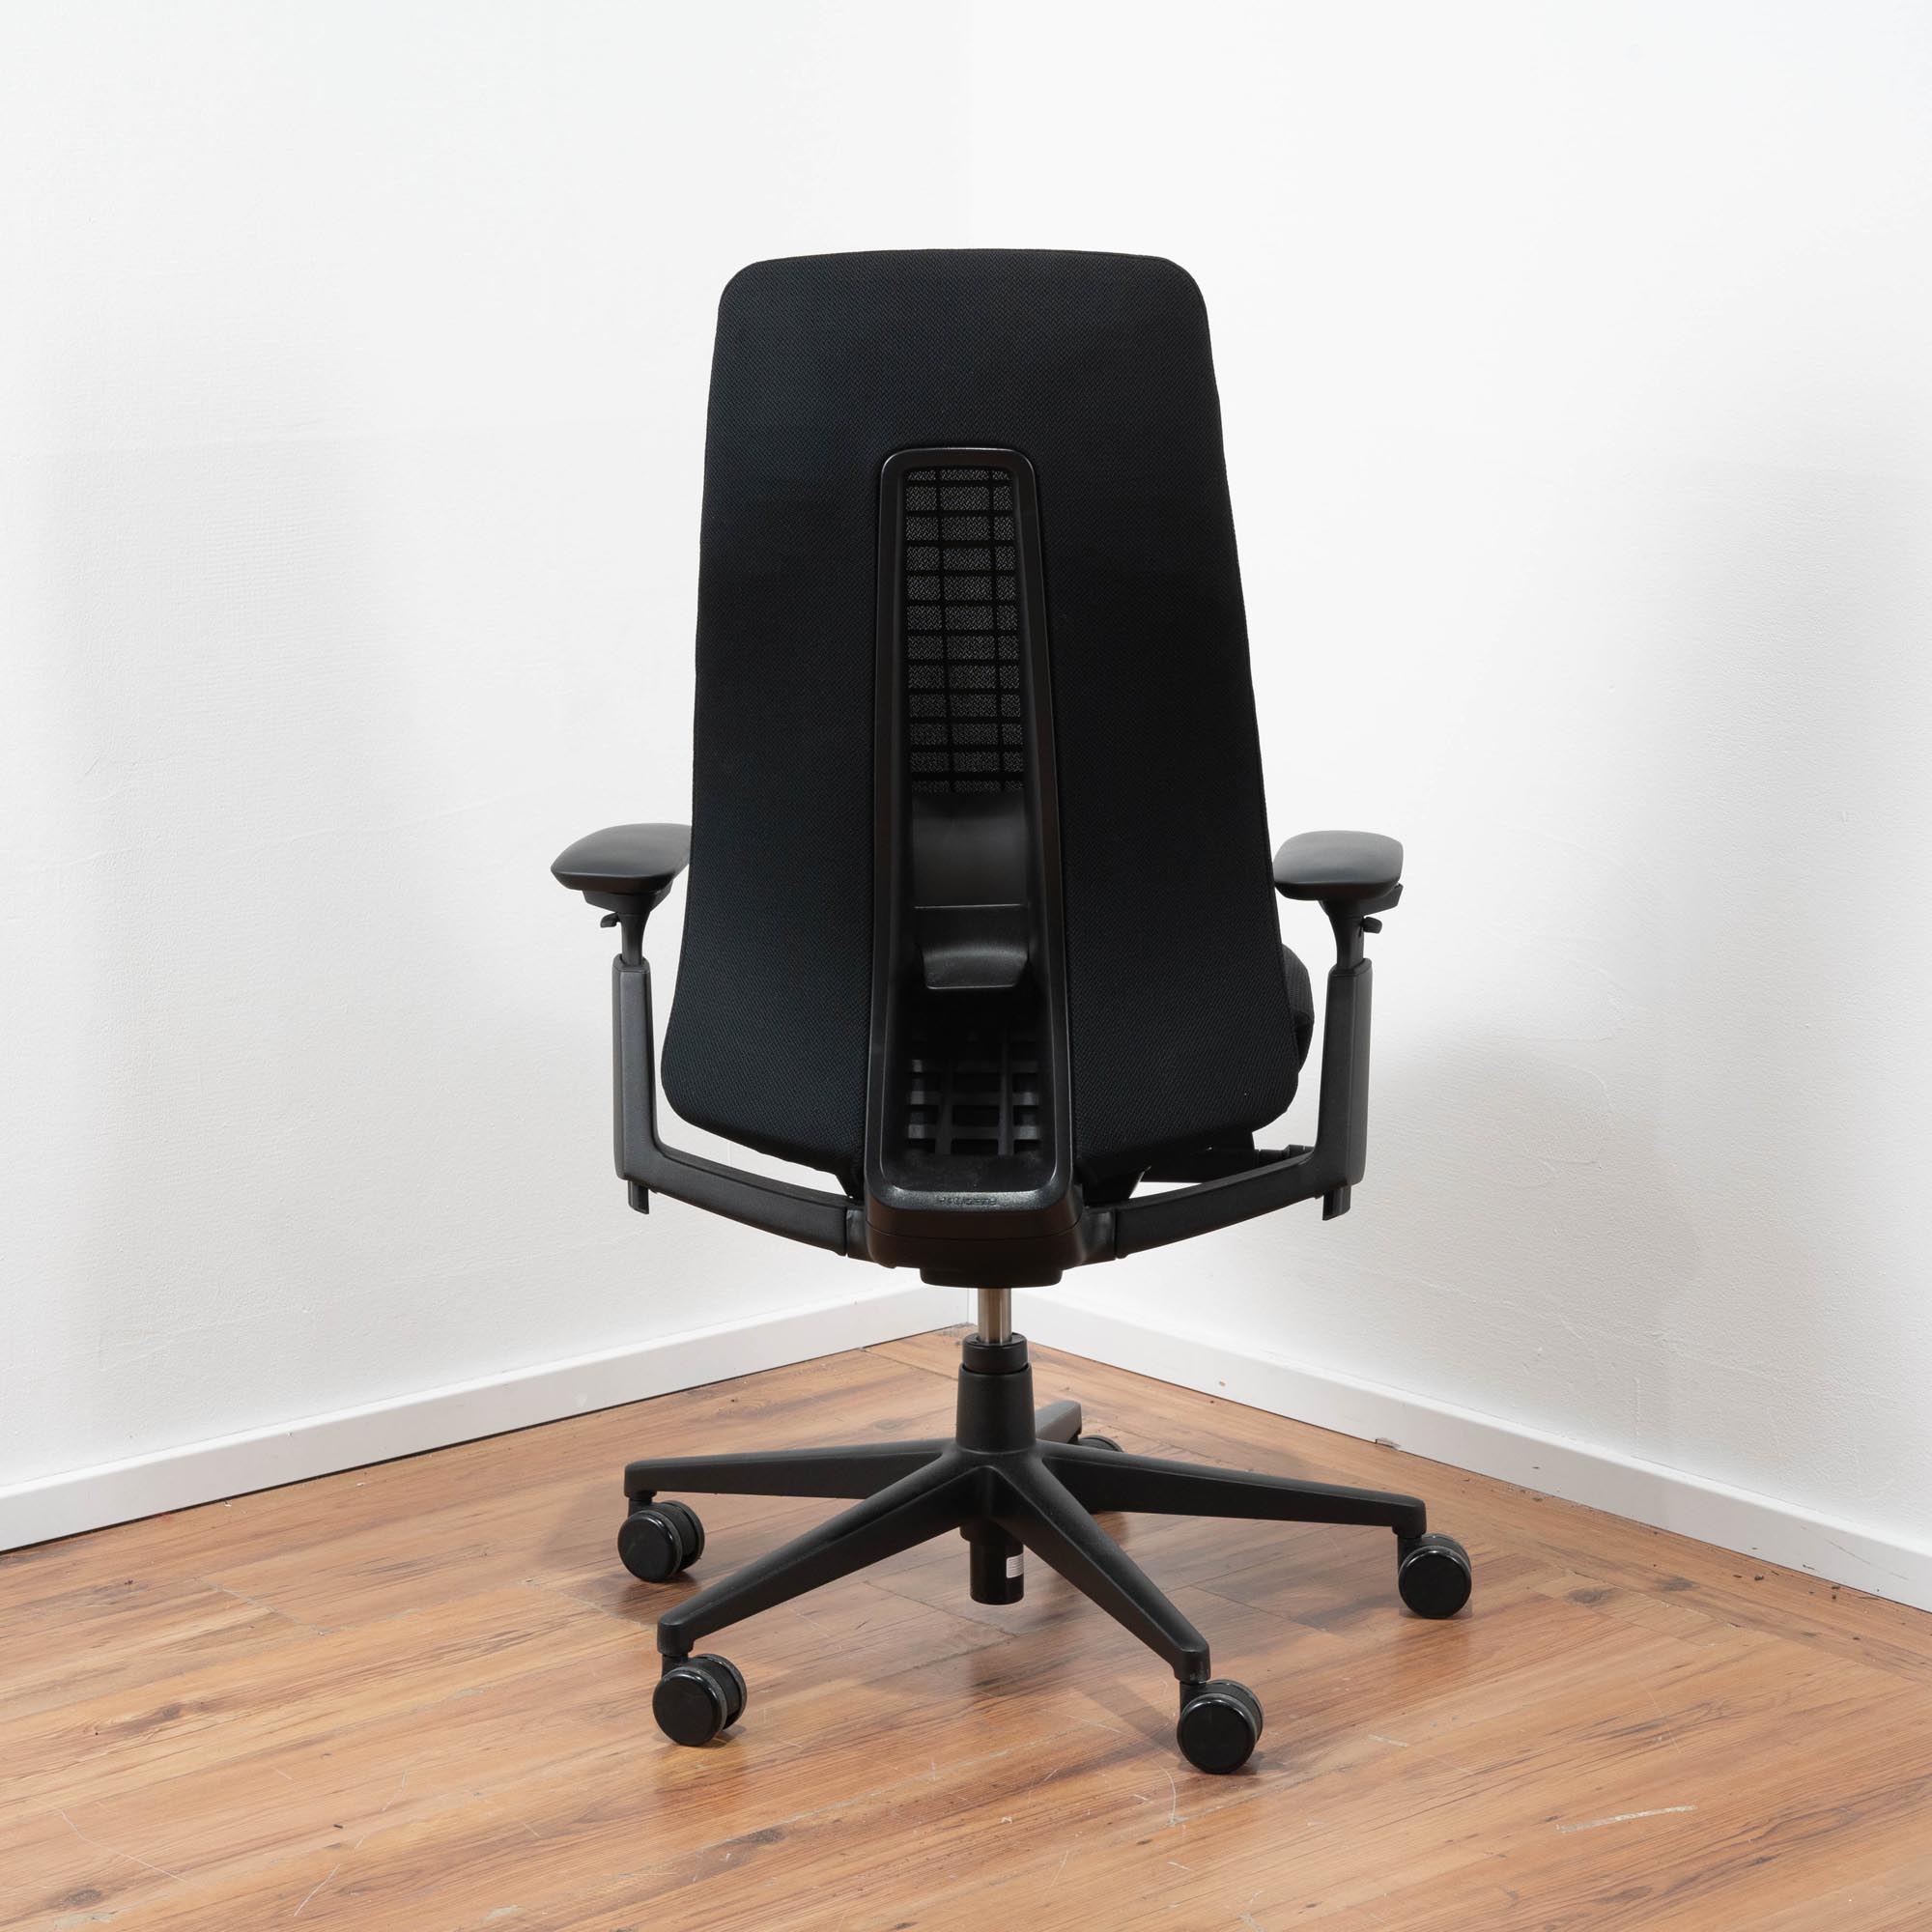 Haworth "Fern" Bürodrehstuhl Polster schwarz - Netz-Rückenlehne schwarz mit einstellbarer Lordosen Stütze - 3D Armlehnen 